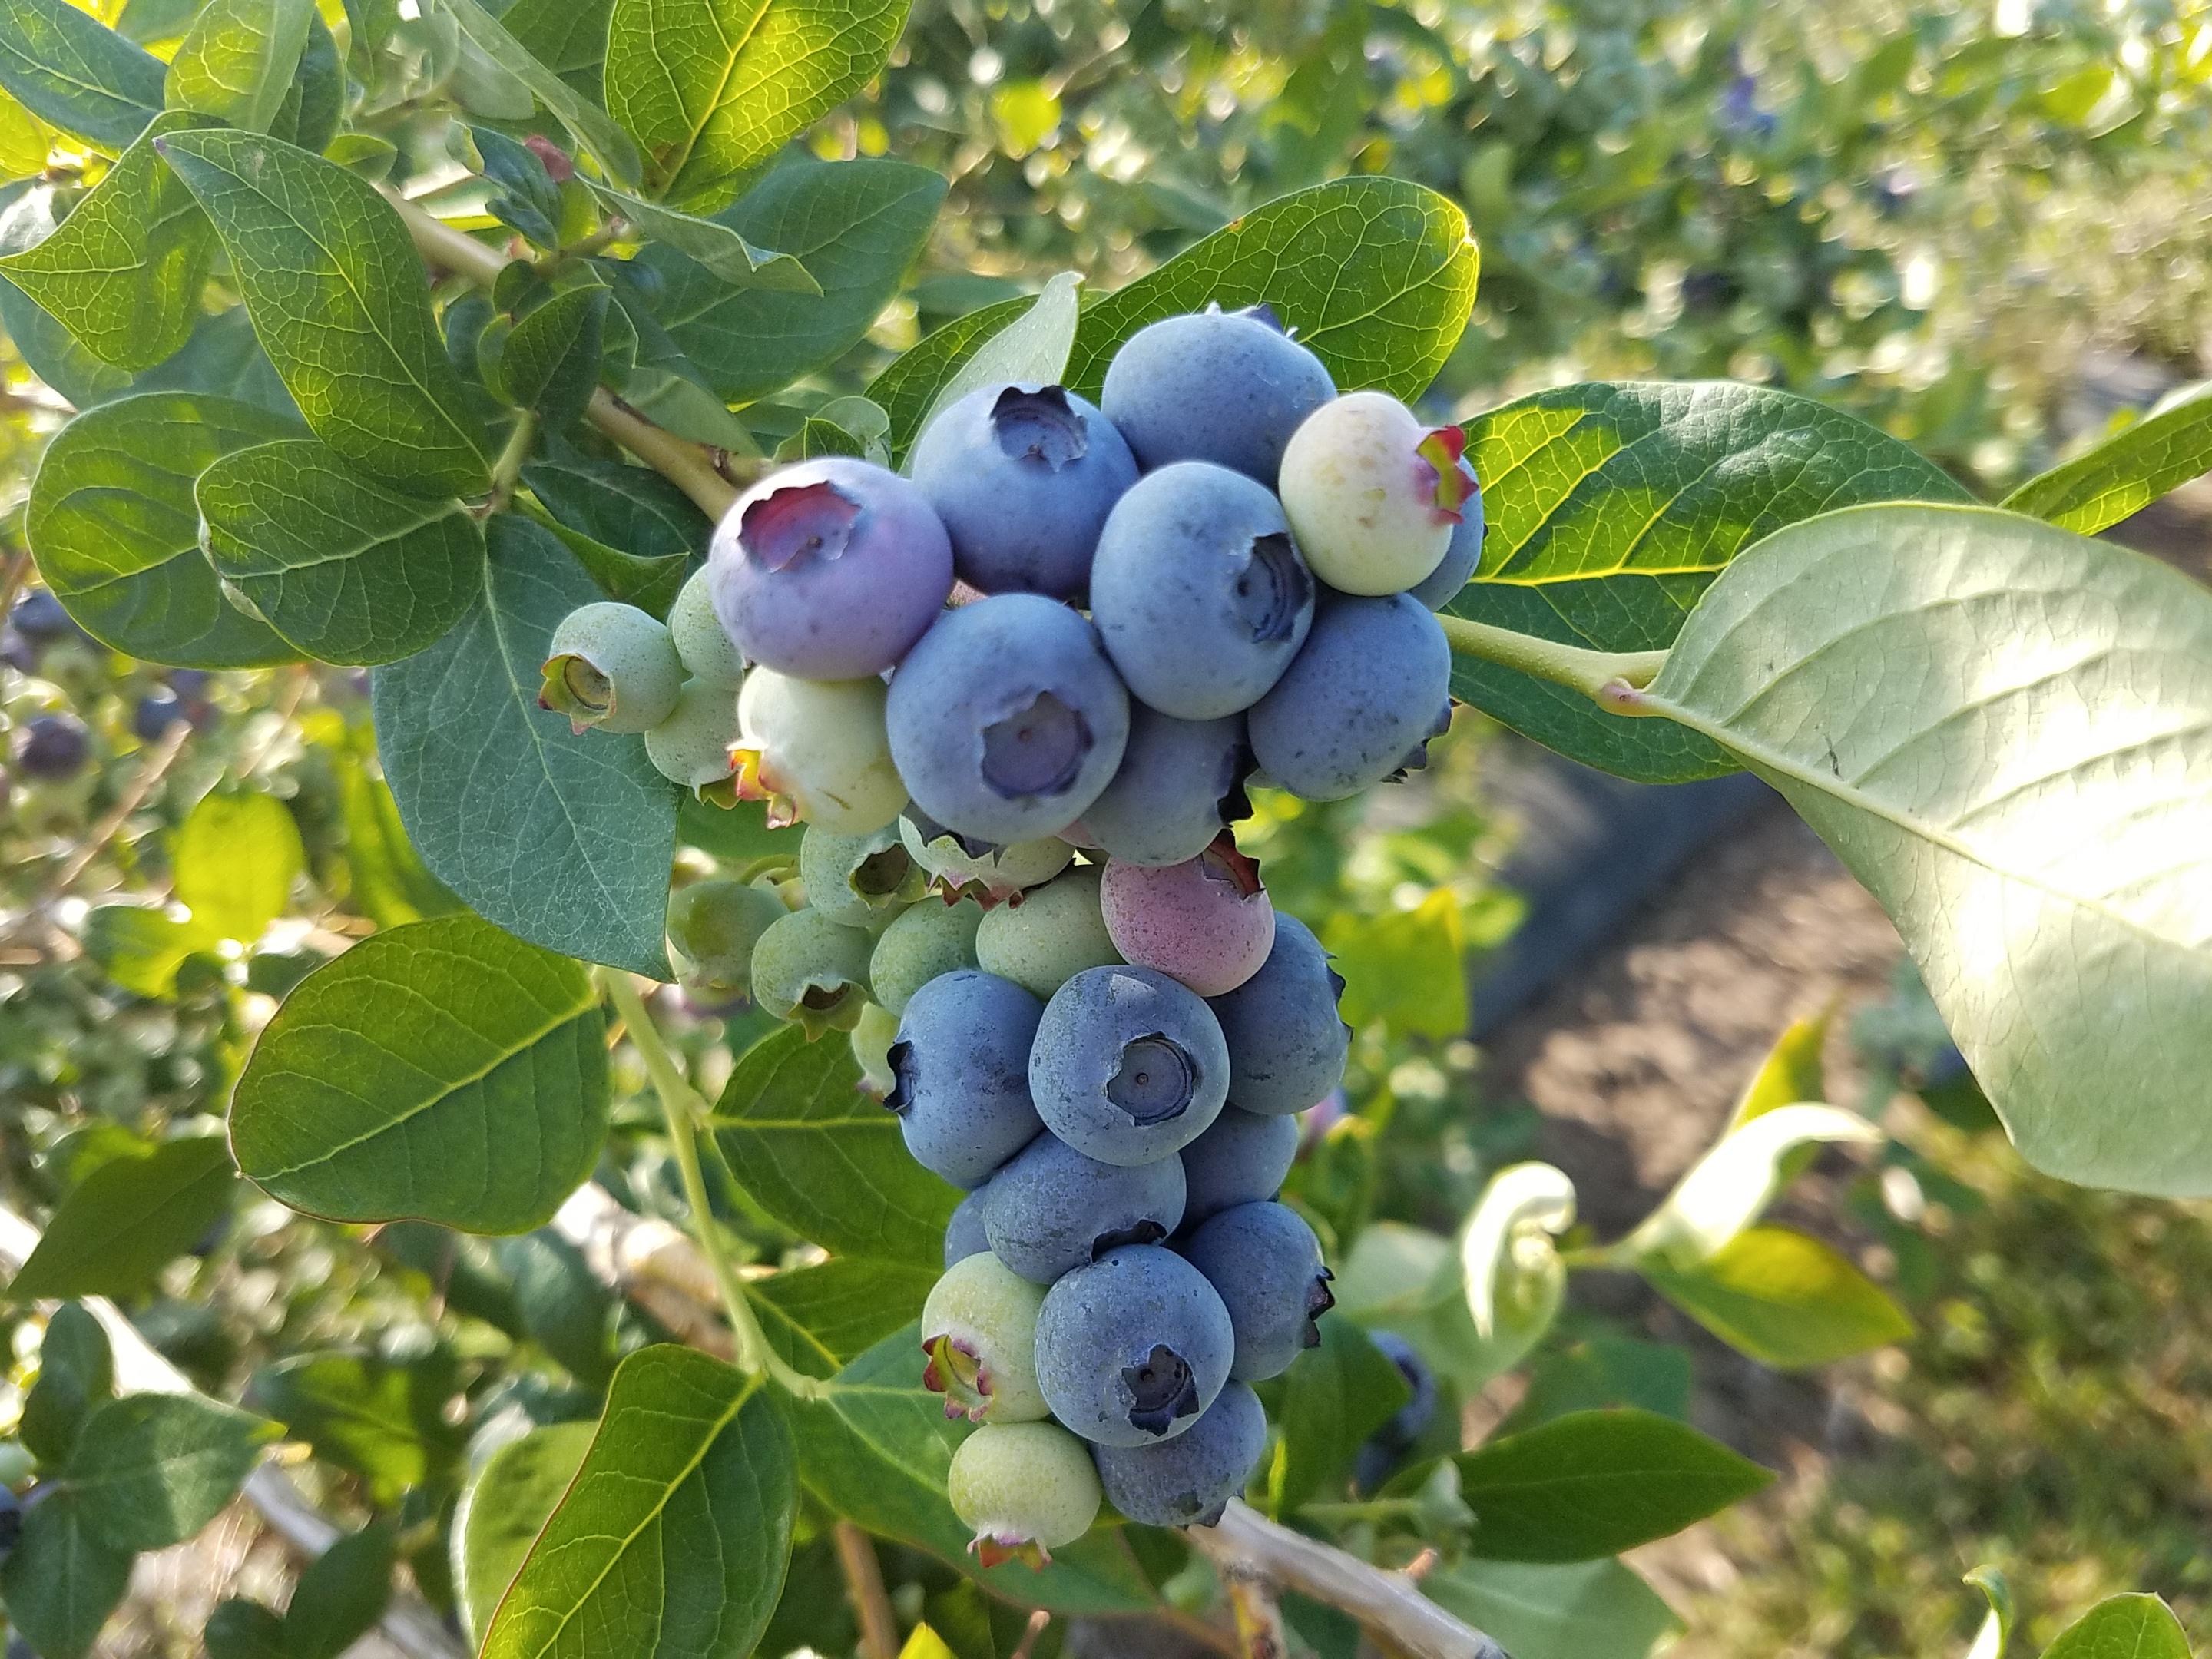 Duke blueberries